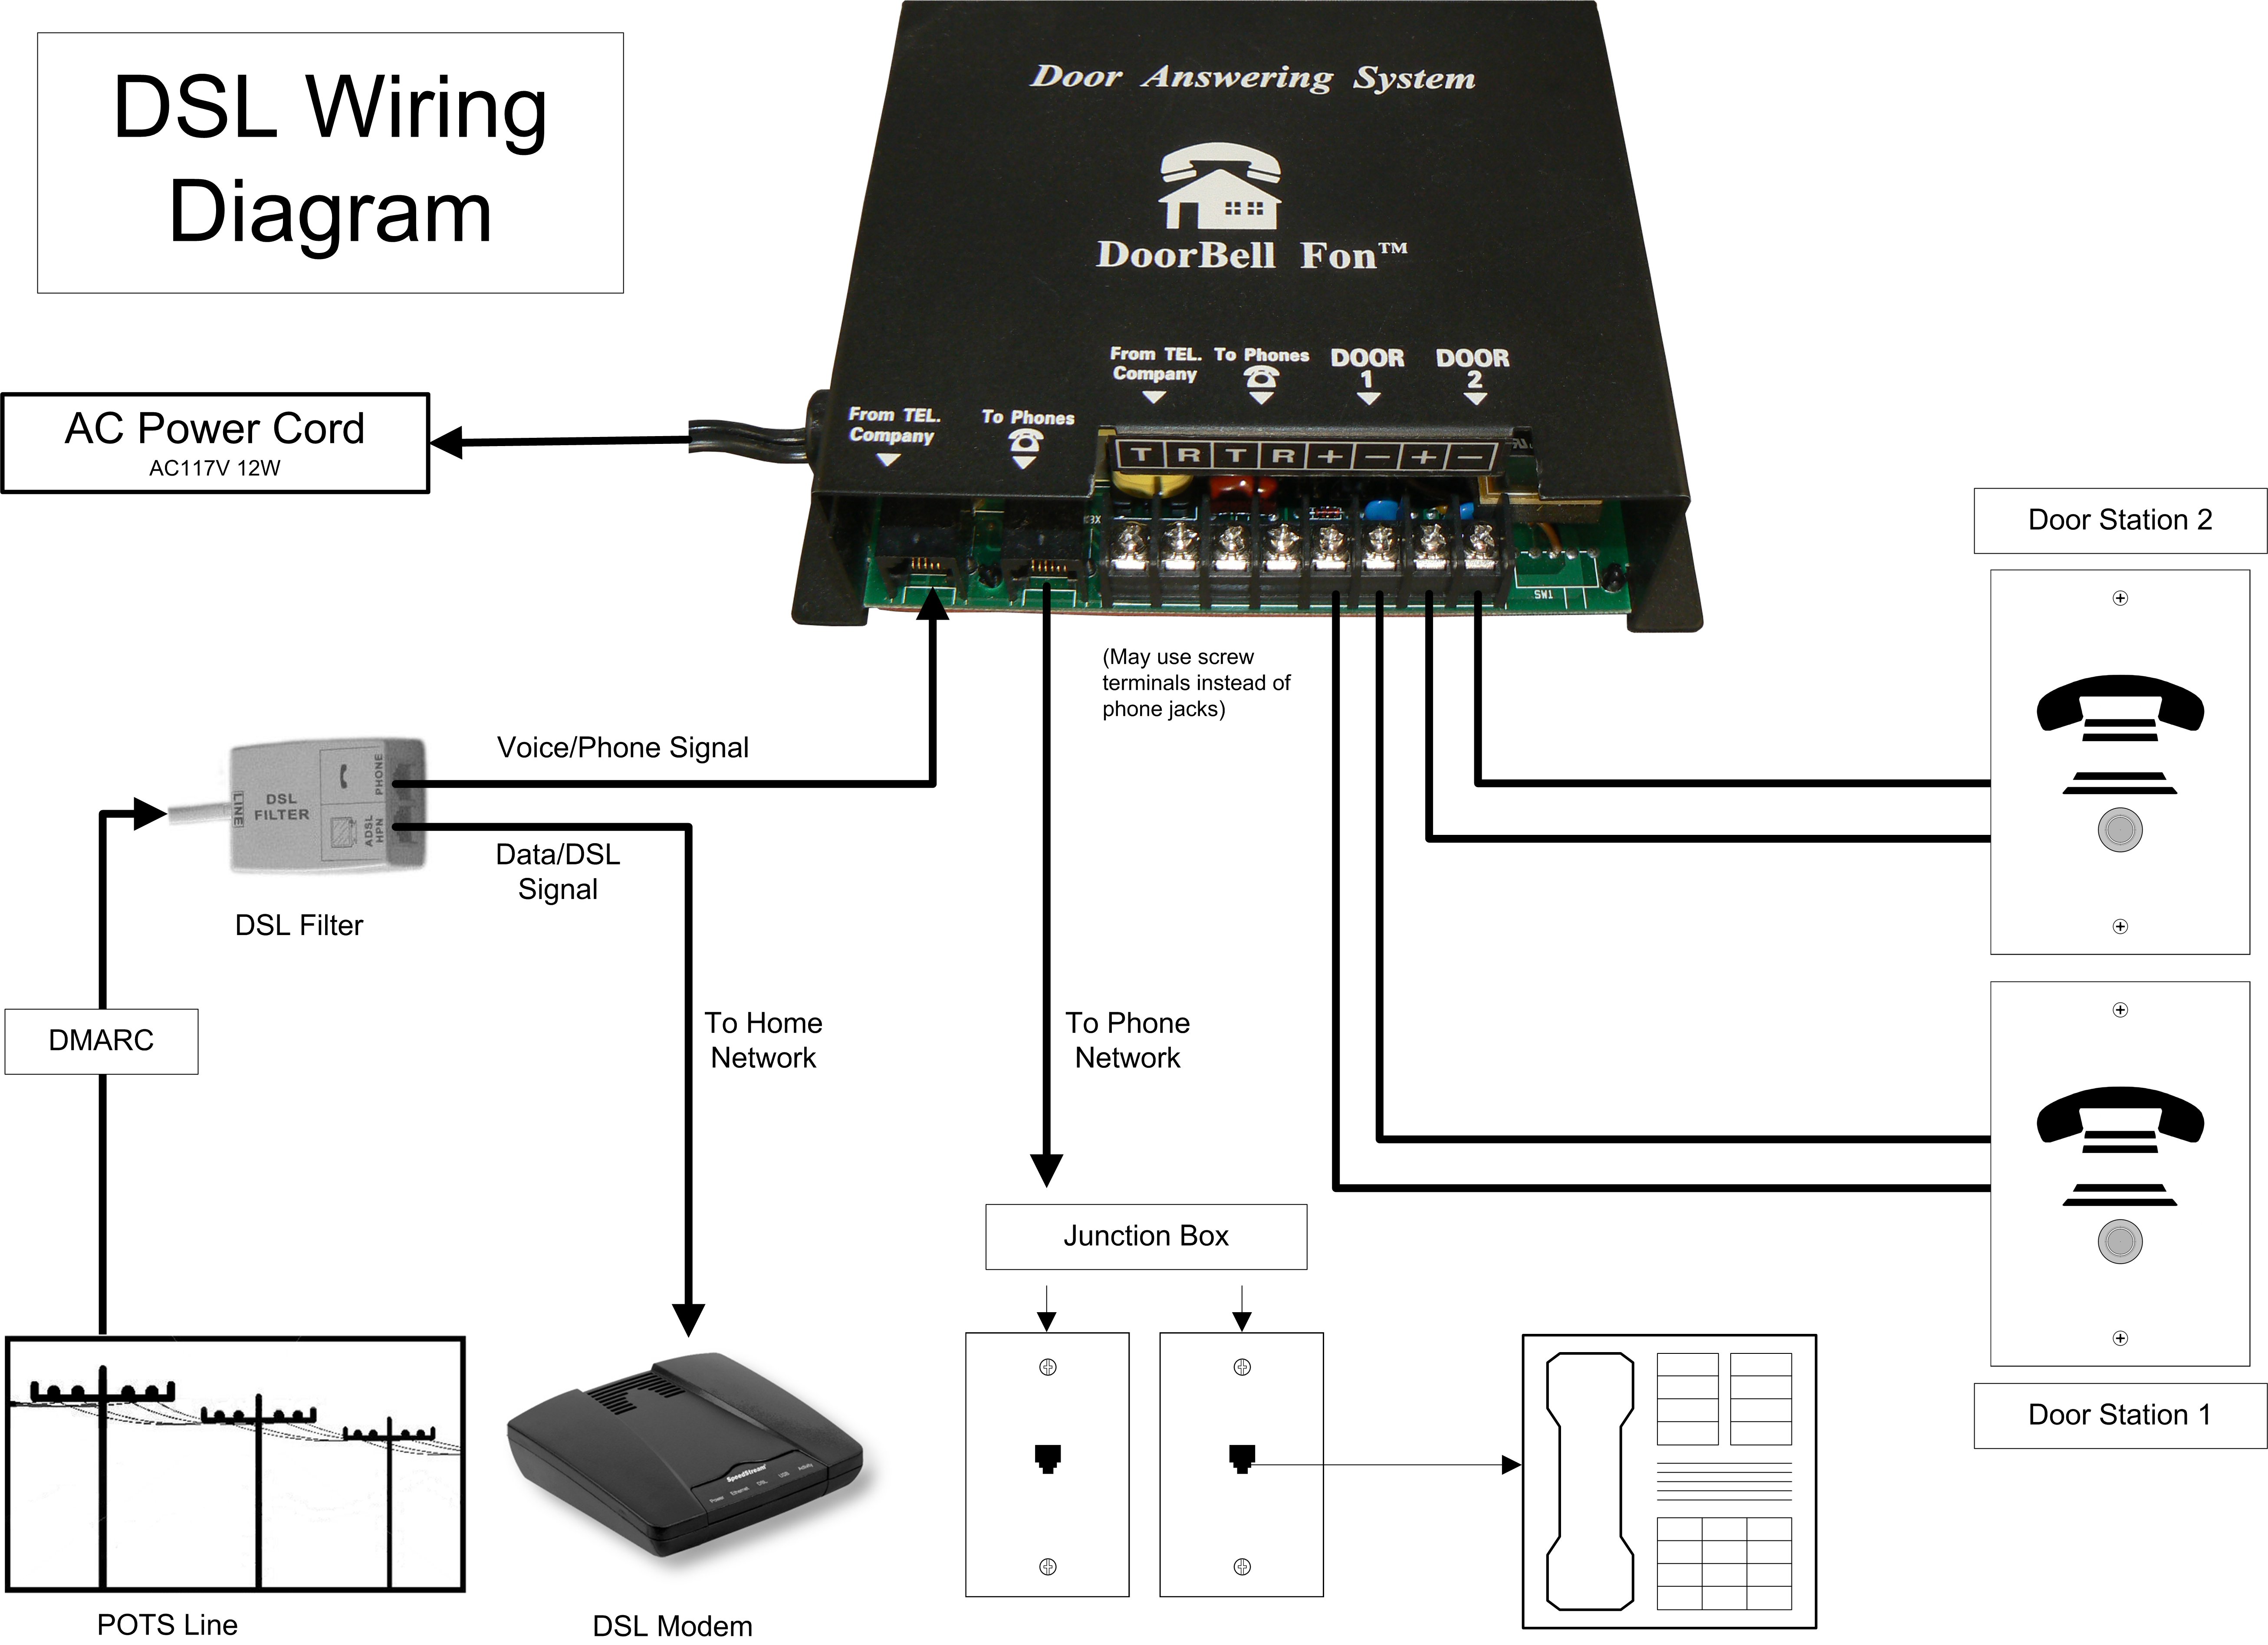 DoorBell Fon Tech Support ⋆ Most Advanced Video DoorBell adsl wiring diagram 